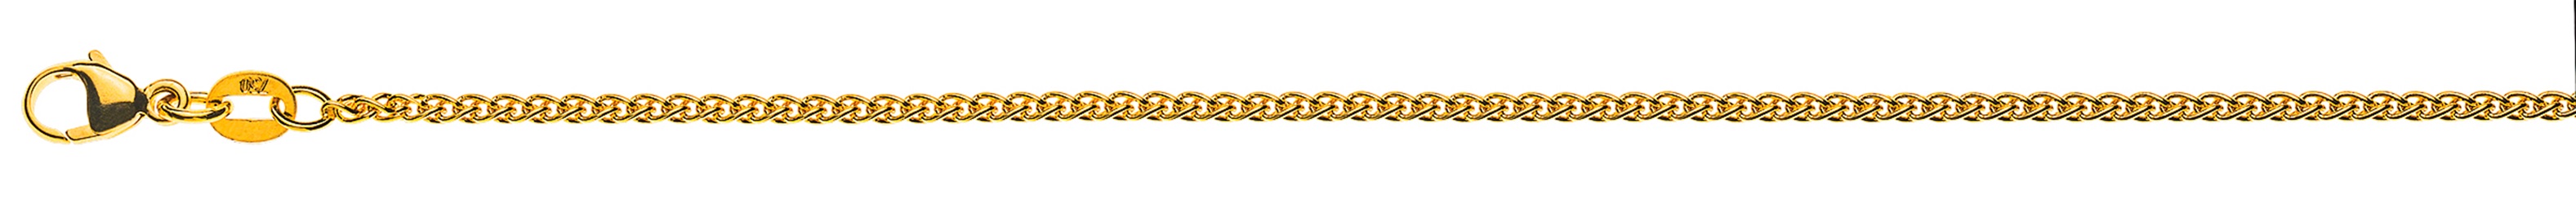 AURONOS Élégance Necklace yellow gold 14K cable chain 45cm 1.6mm